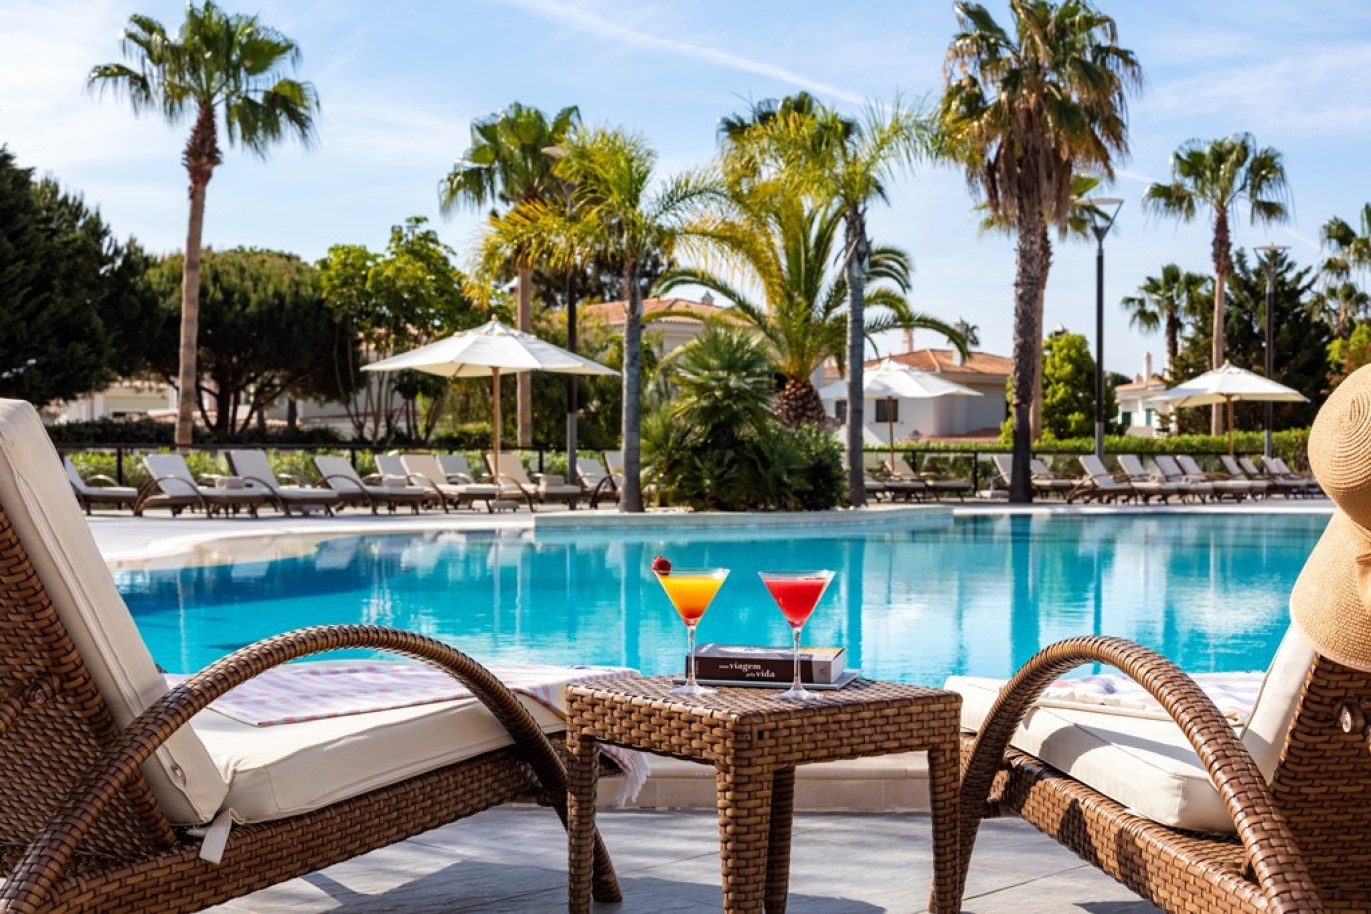 Apartamento, 2 quartos, piscina, para venda na Quinta do Lago, Algarve_262196